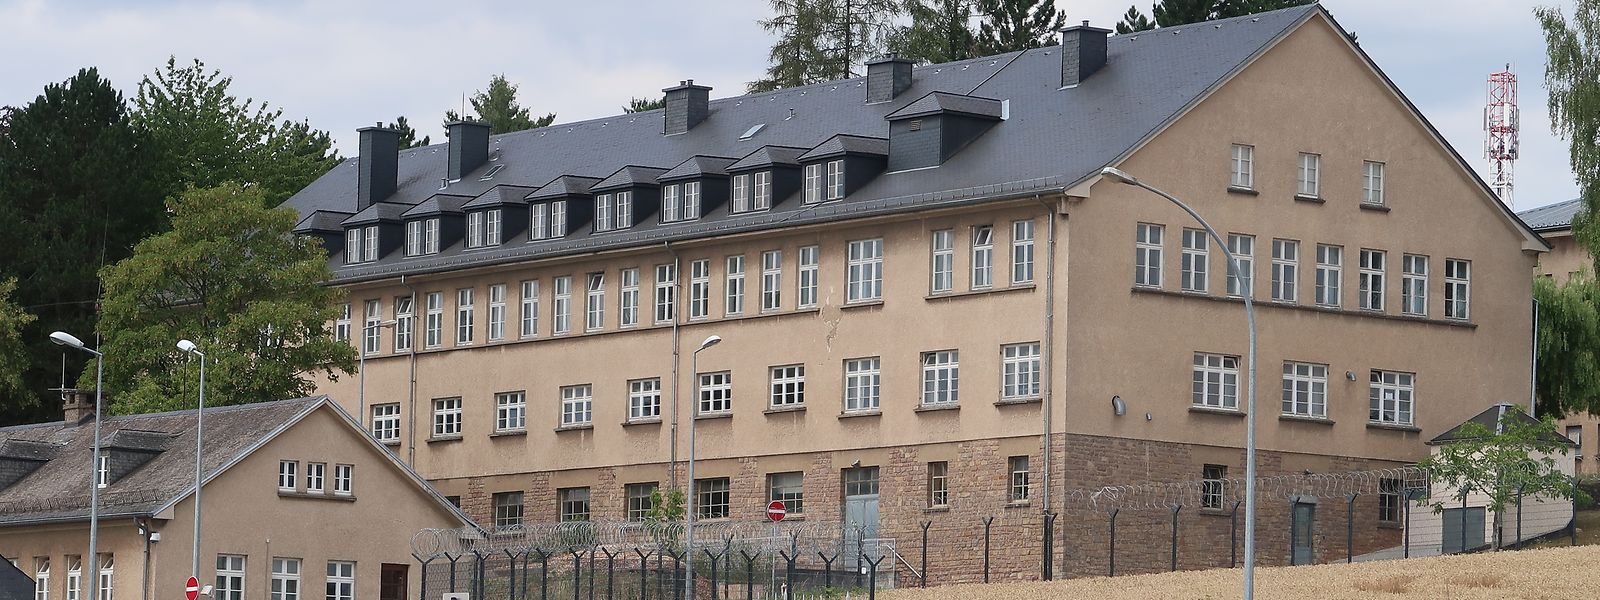 Die Kaserne auf Herrenberg soll durch die Nutzung  erneuerbarer Energien wesentlich energieautarker werden.